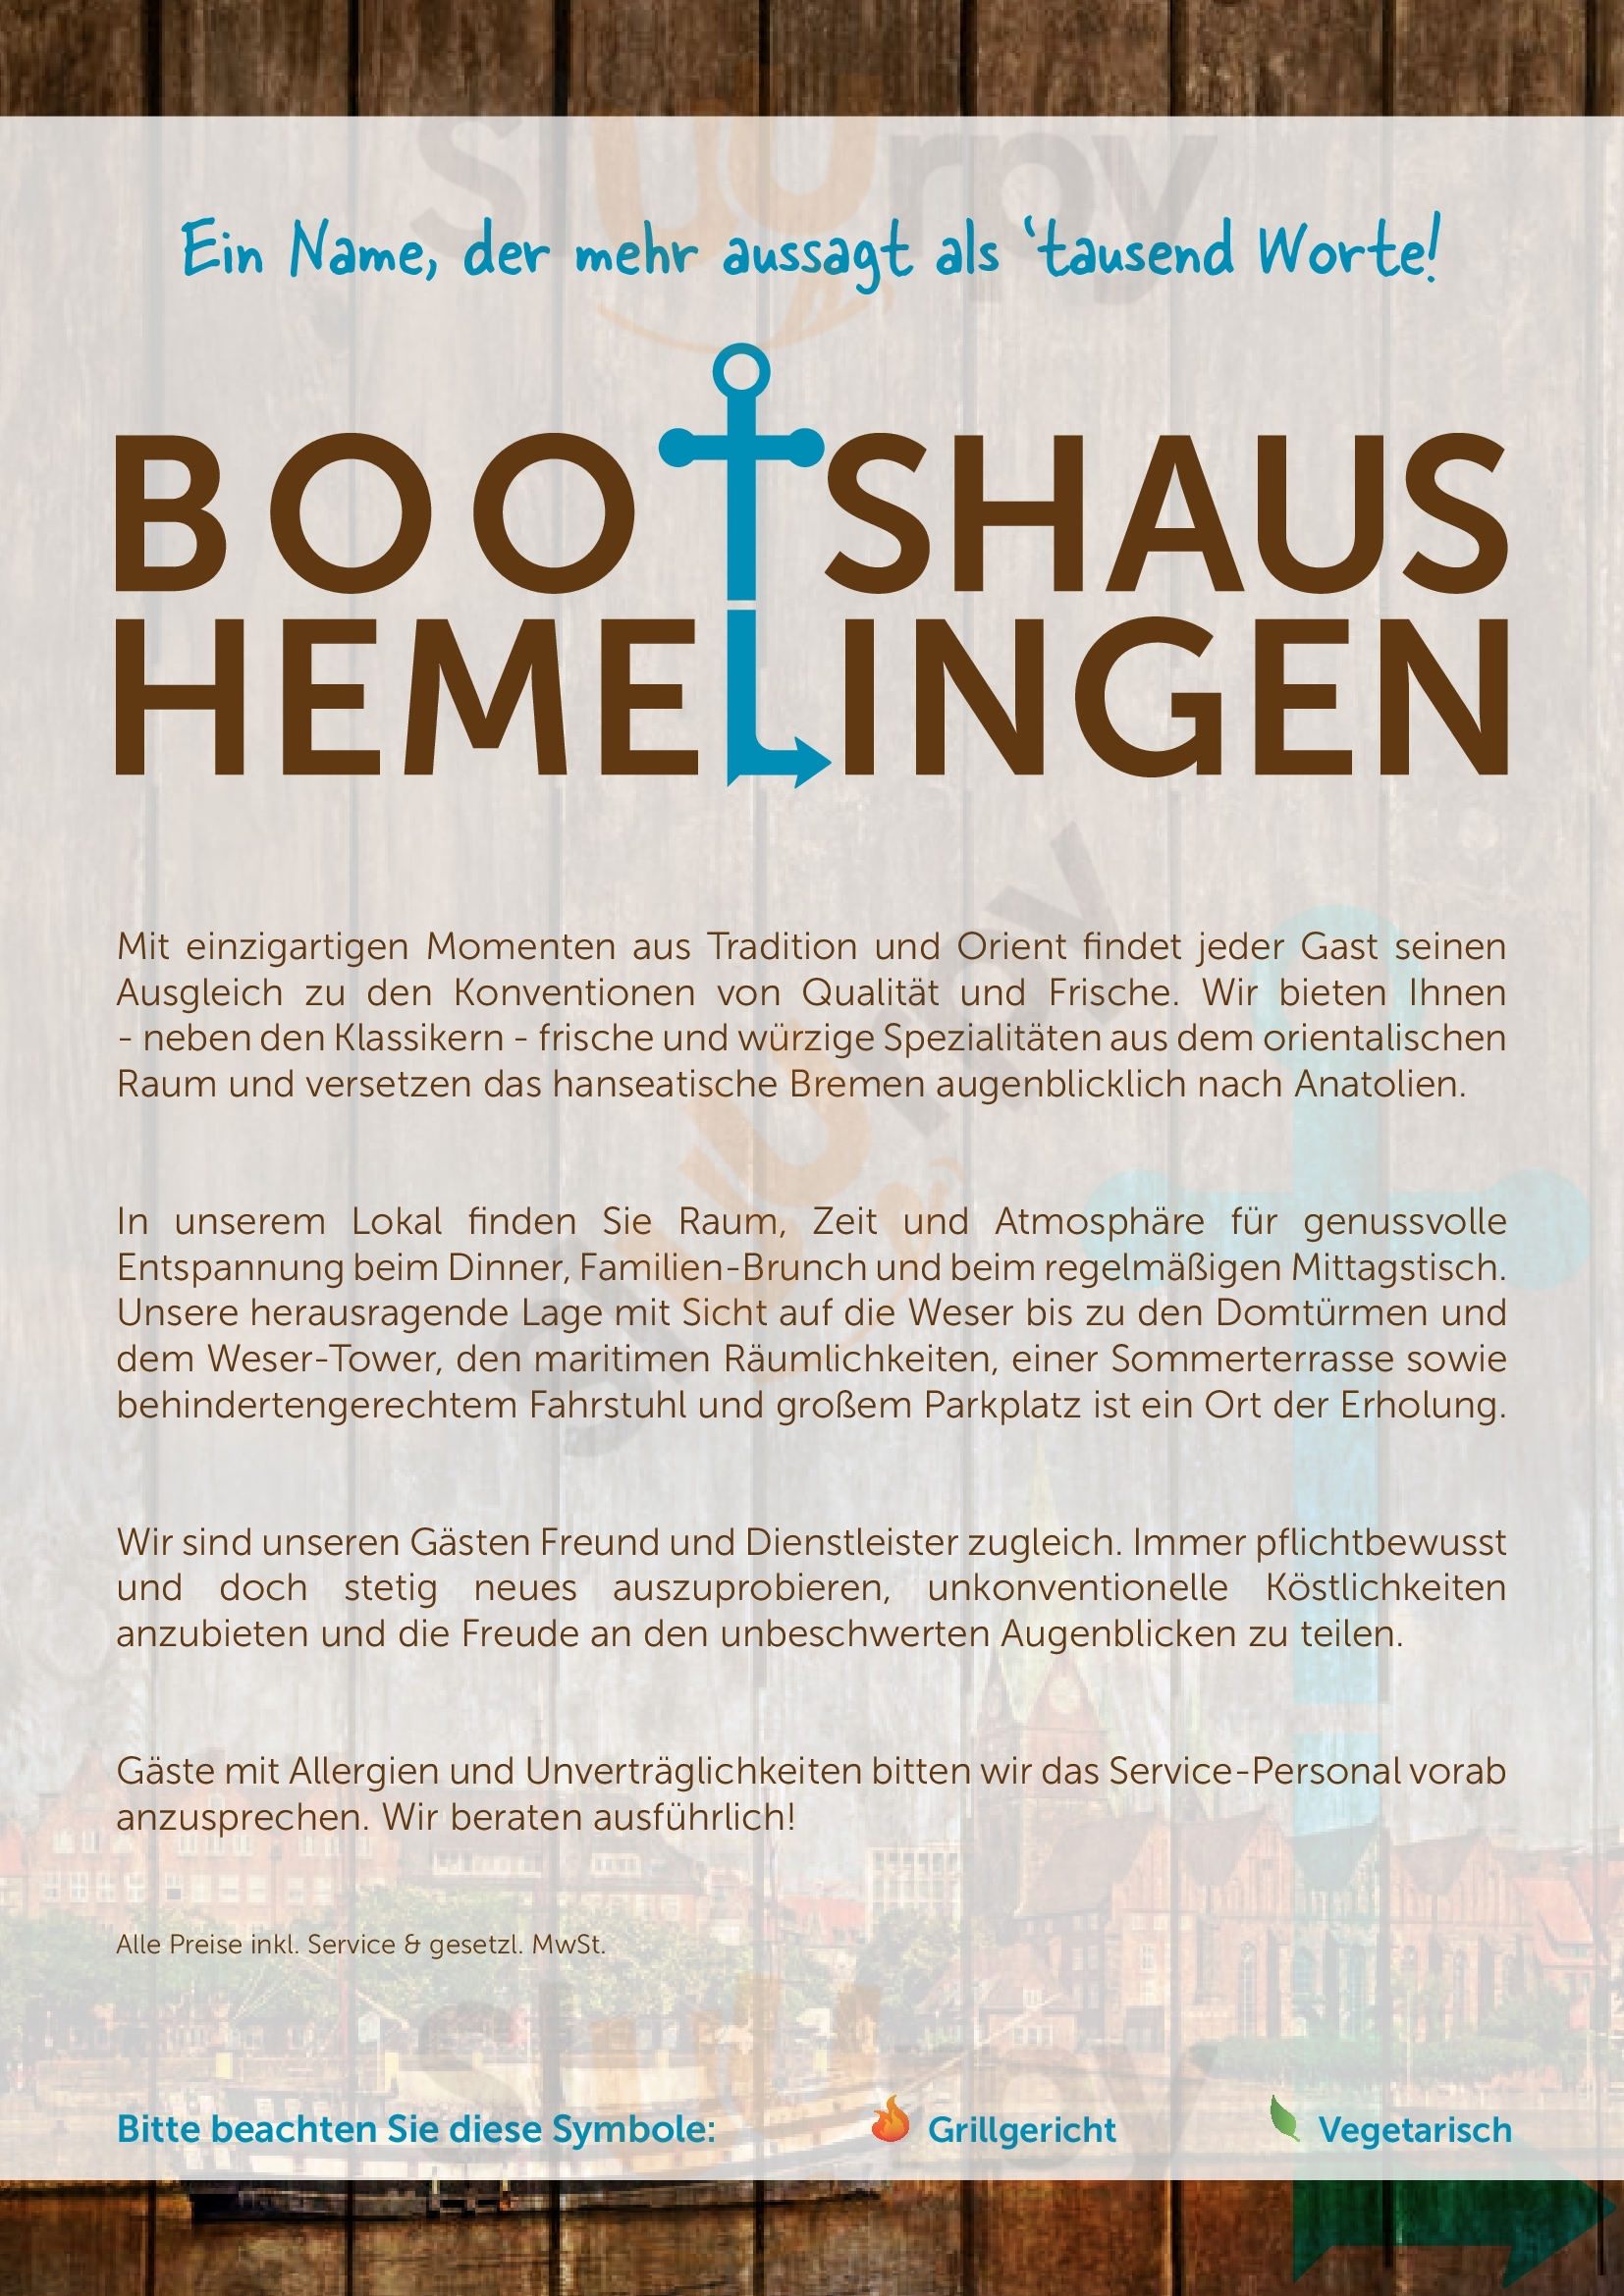 Bootshaus Hemelingen Bremen Menu - 1